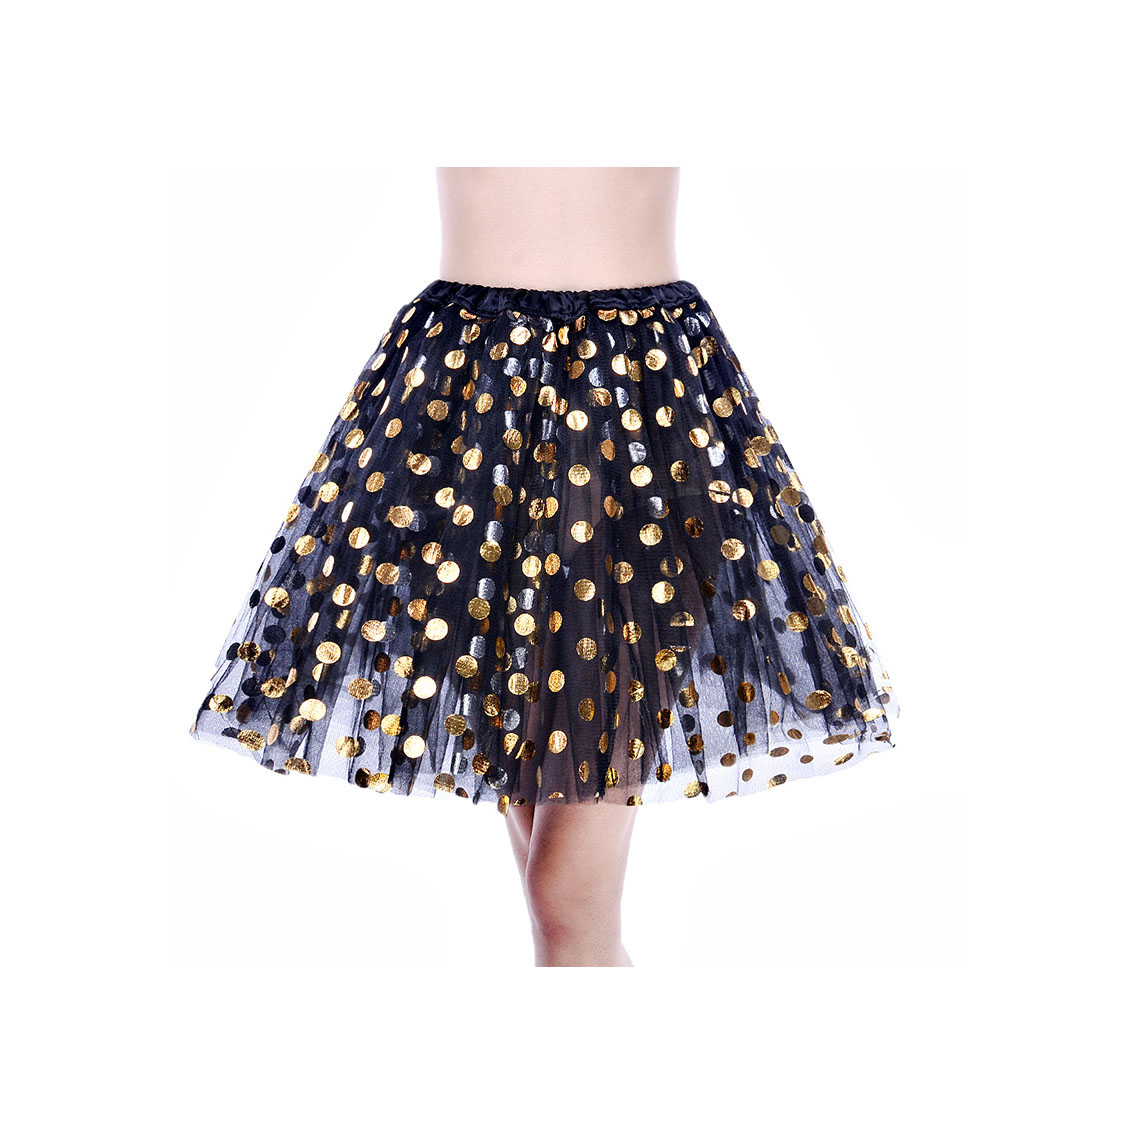 Adult Tutu Skirt Sequin Gilding Polka Dot 3 Layers Party Dance Ballet Pettiskirt Tulle Girl Mini Skirt Black+gold